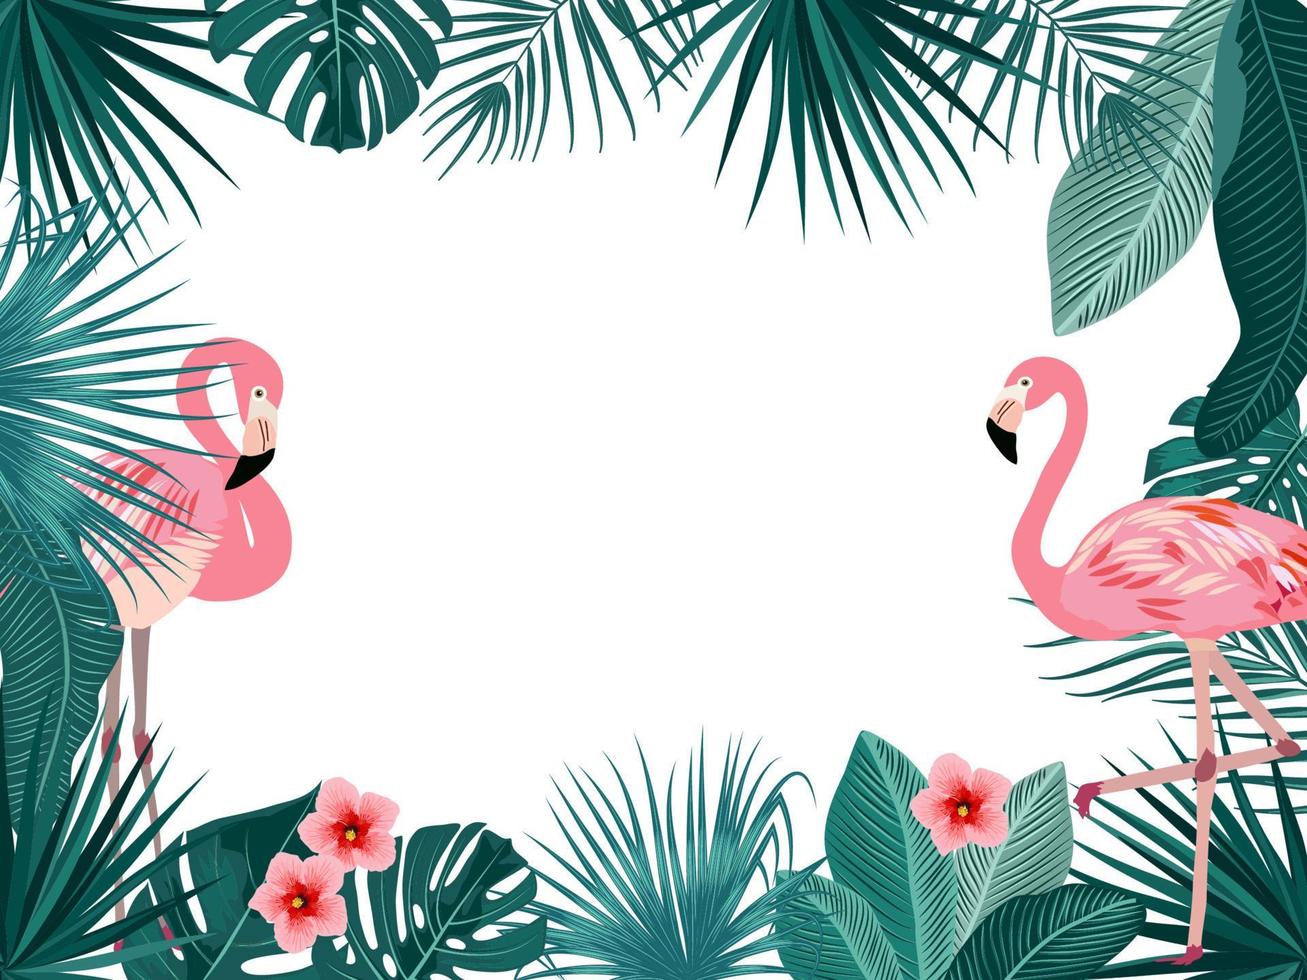 cadre de jungle tropicale de vecteur avec flamant rose, palmiers, fleurs et feuilles sur fond blanc